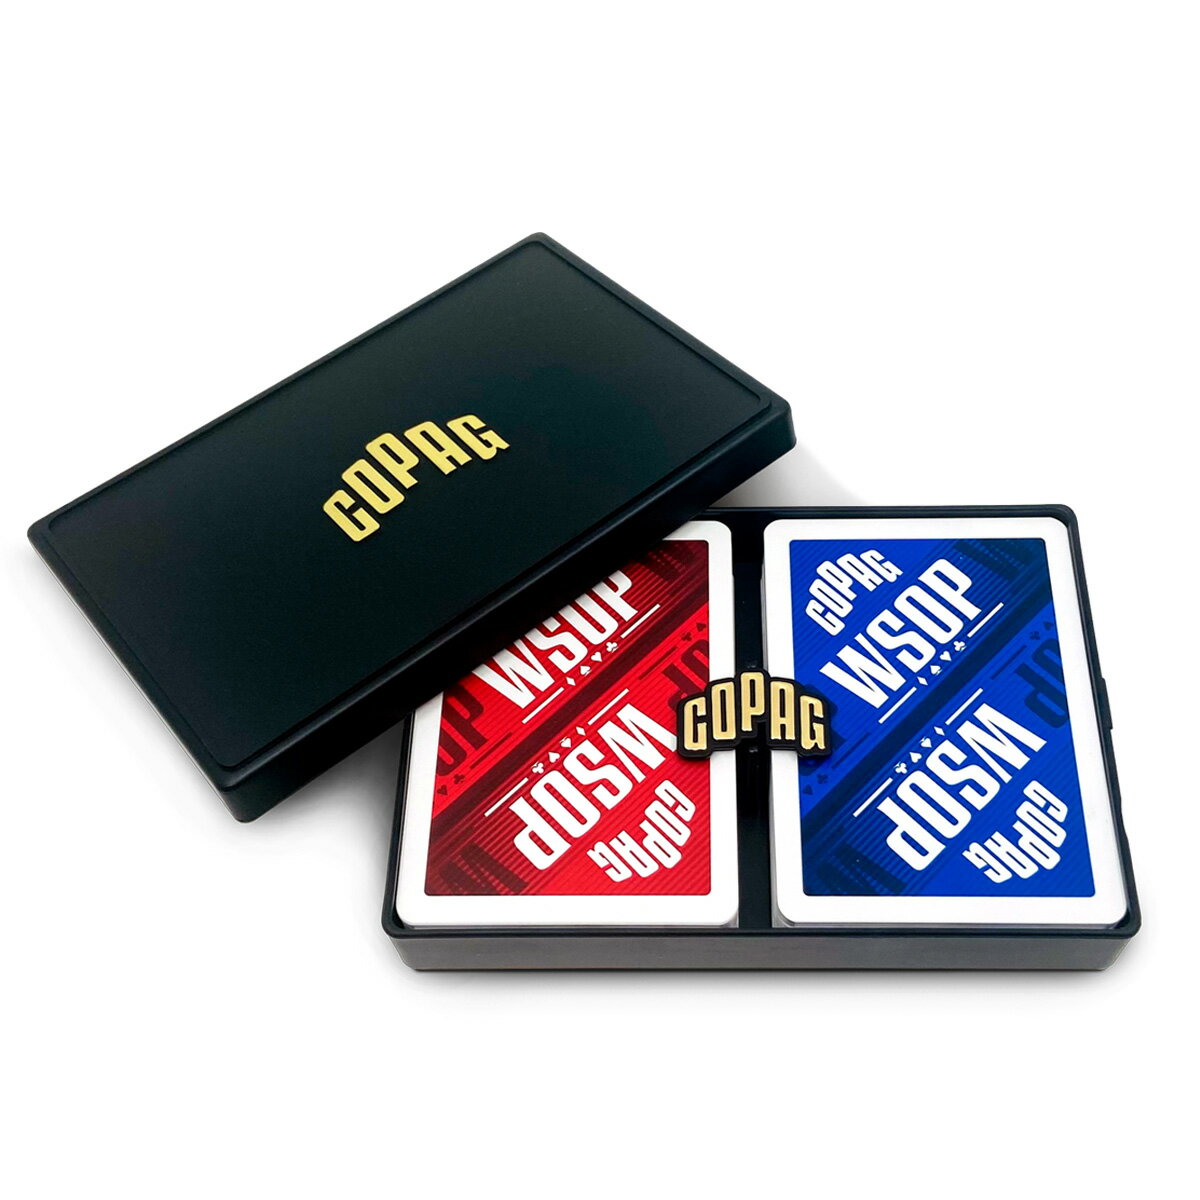 COPAG WSOP ポーカーサイズ ジャンボインデックス ダブルデッキ トランプ プラスチック カード プロ マジック 手品 レッド/ブルー